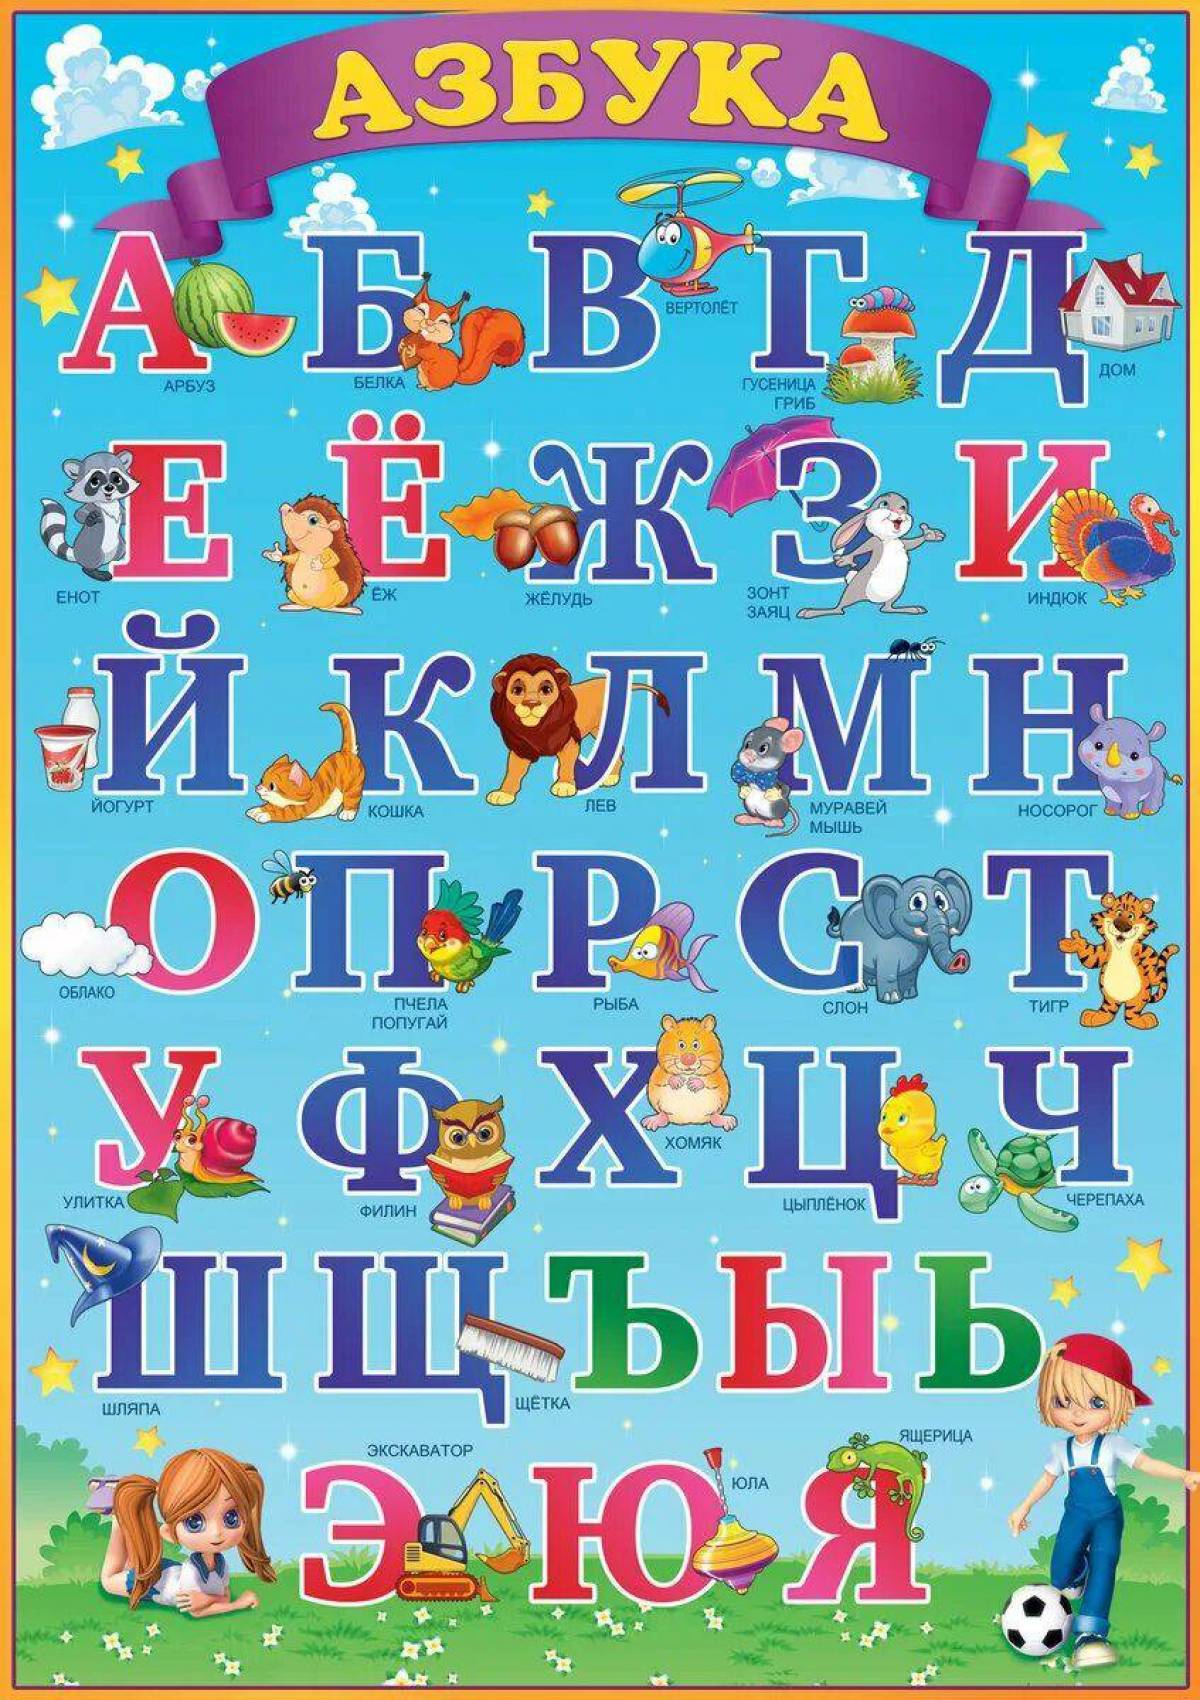 Vi буквы. Азбука для детей. Алфавит русский для детей. Азбука детская в картинках. Плакат алфавит для детей.